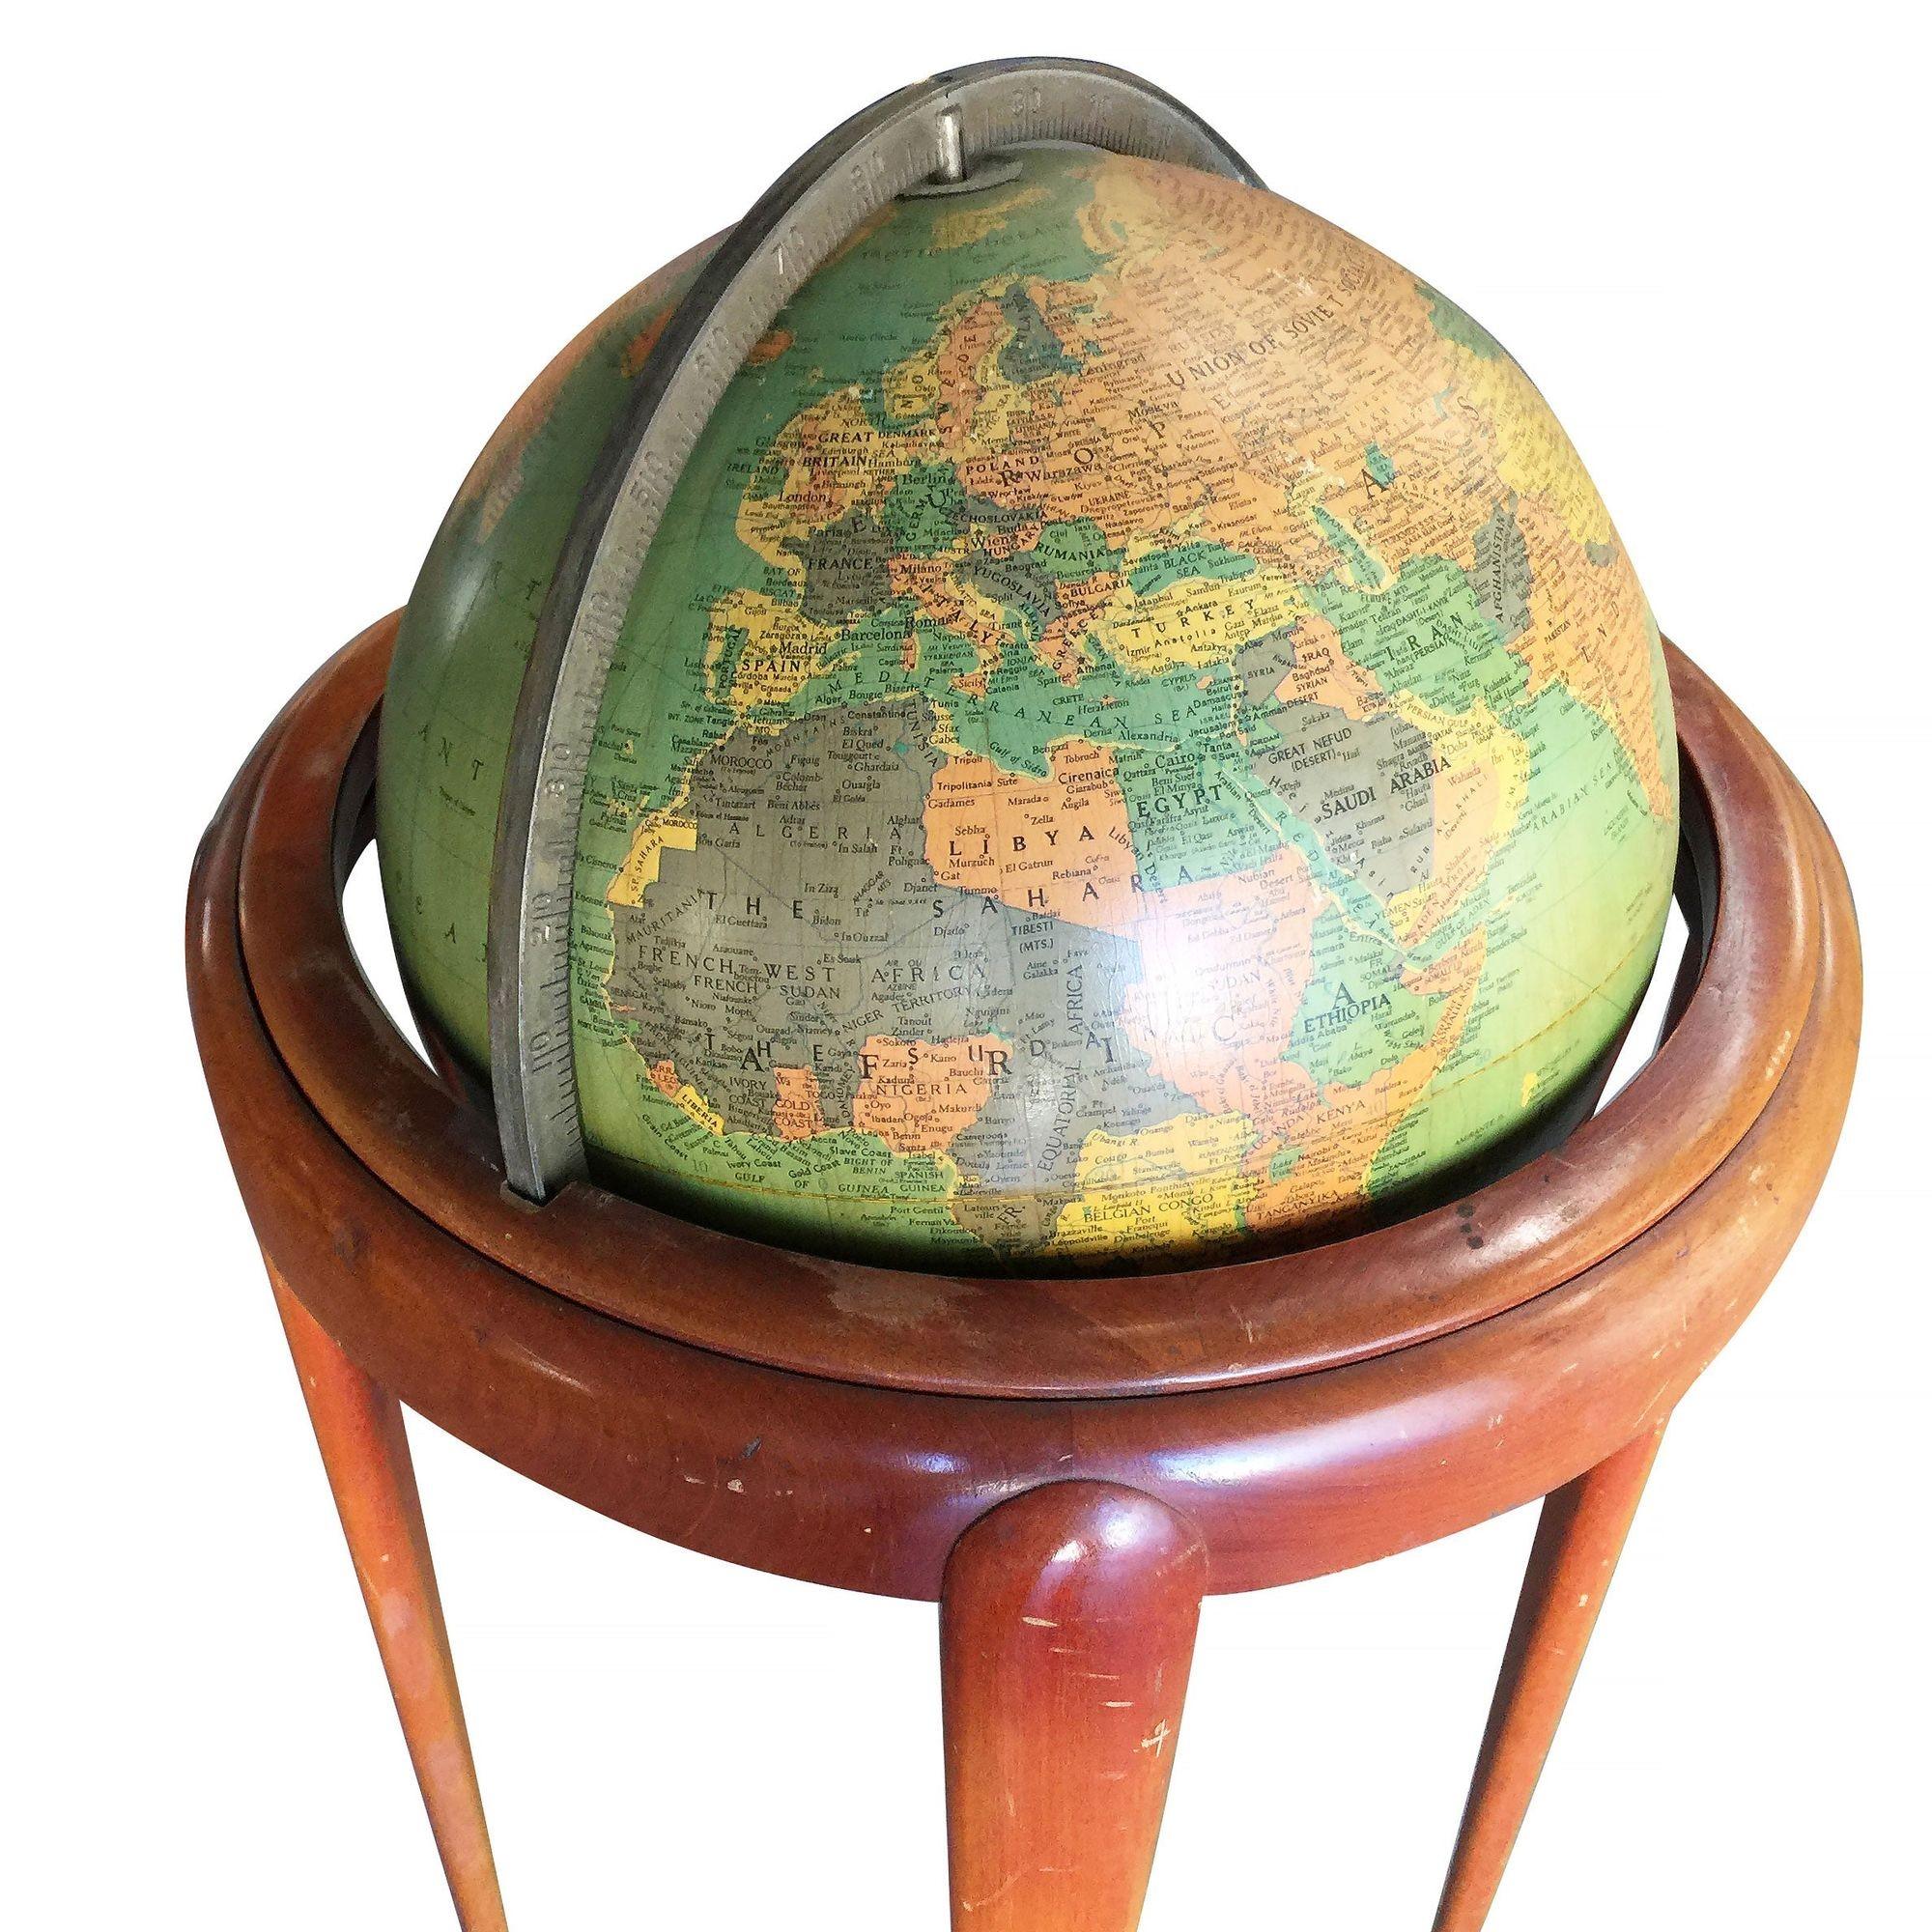 Globe terrestre de l'époque du milieu du siècle, composé d'un globe en acier suspendu à un support en acajou. Le globe tourne à 360 degrés sur un axe à deux points constitué de roulements à billes métalliques.

Fabriqué par Replogle.